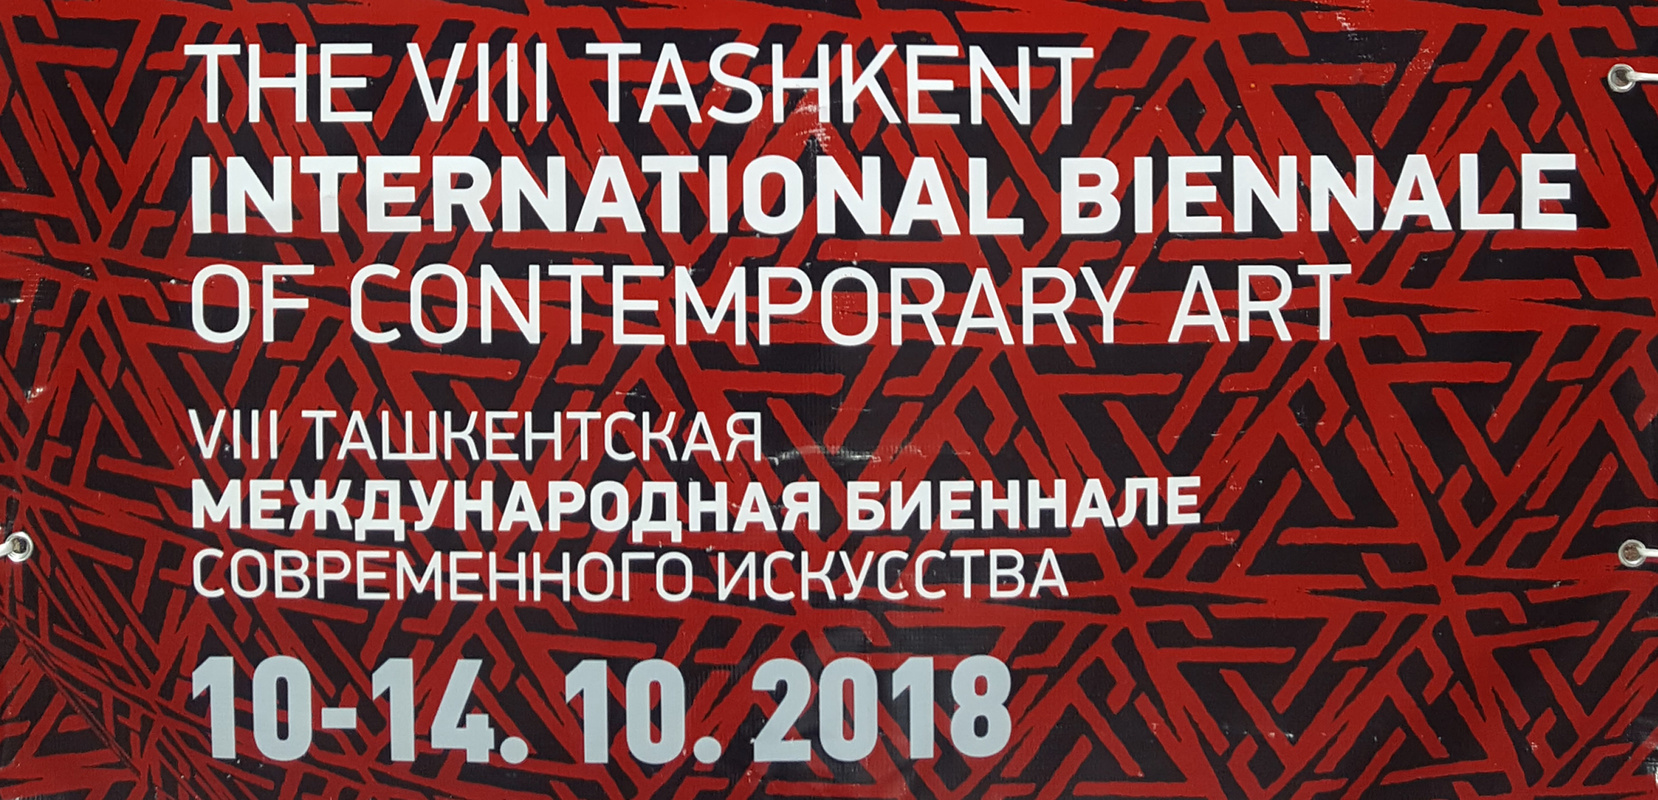 VIII Ташкентская Международная Биеннале современного искусства